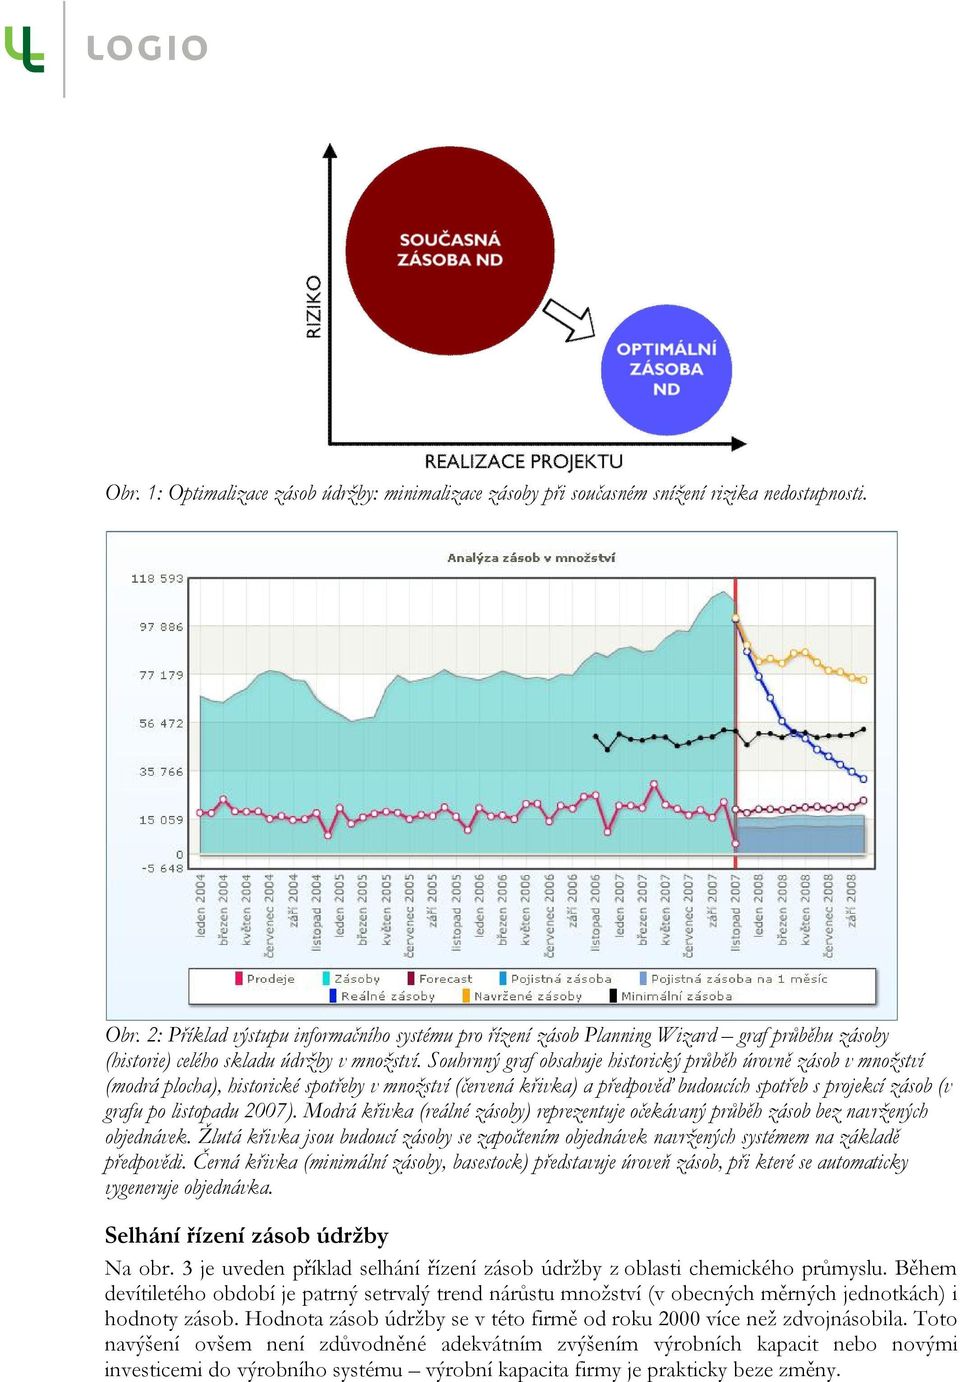 Souhrnný graf obsahuje historický průběh úrovně zásob v množství (modrá plocha), historické spotřeby v množství (červená křivka) a předpověď budoucích spotřeb s projekcí zásob (v grafu po listopadu